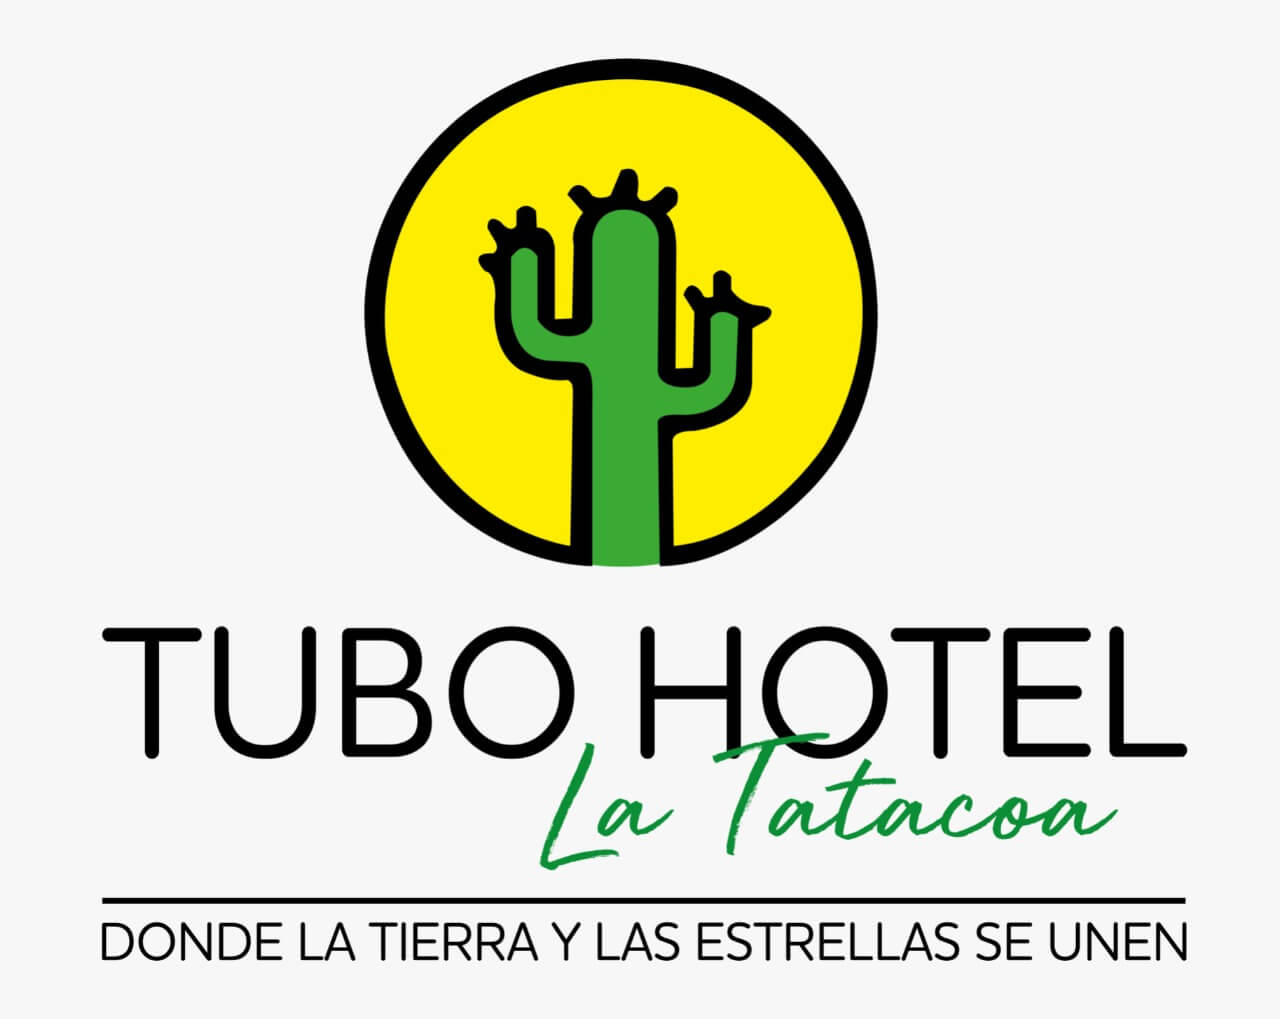 Tubohotel La Tatacoa, un espacio único lleno de luz y color